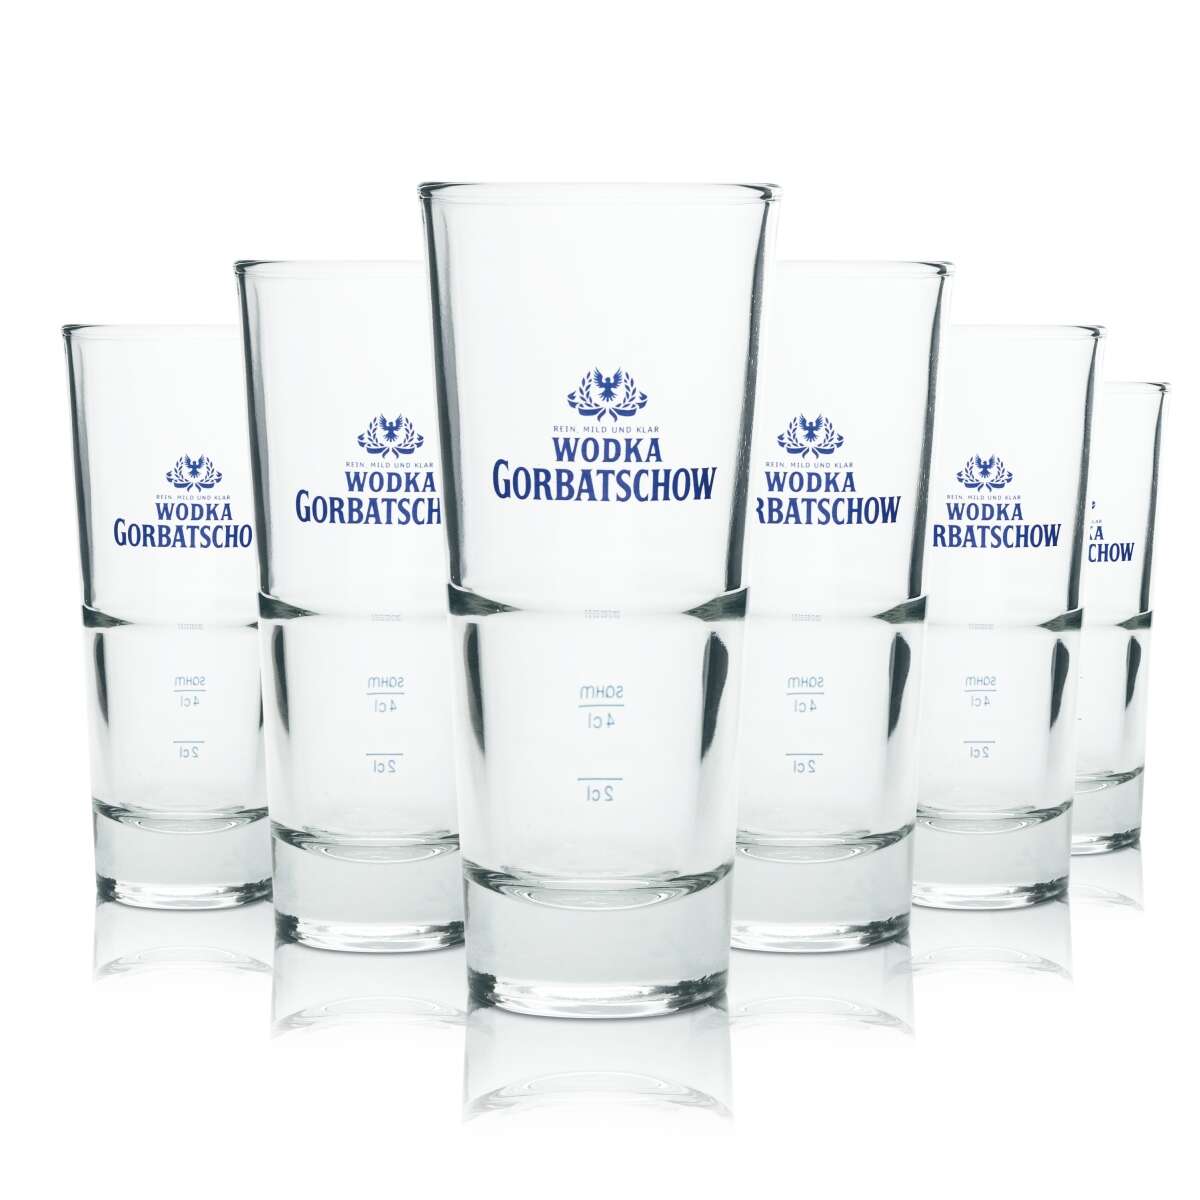 6 x Russian Standard Glas Gläser Vodka Longdrink Stapelbar Gastro Bar NEU 